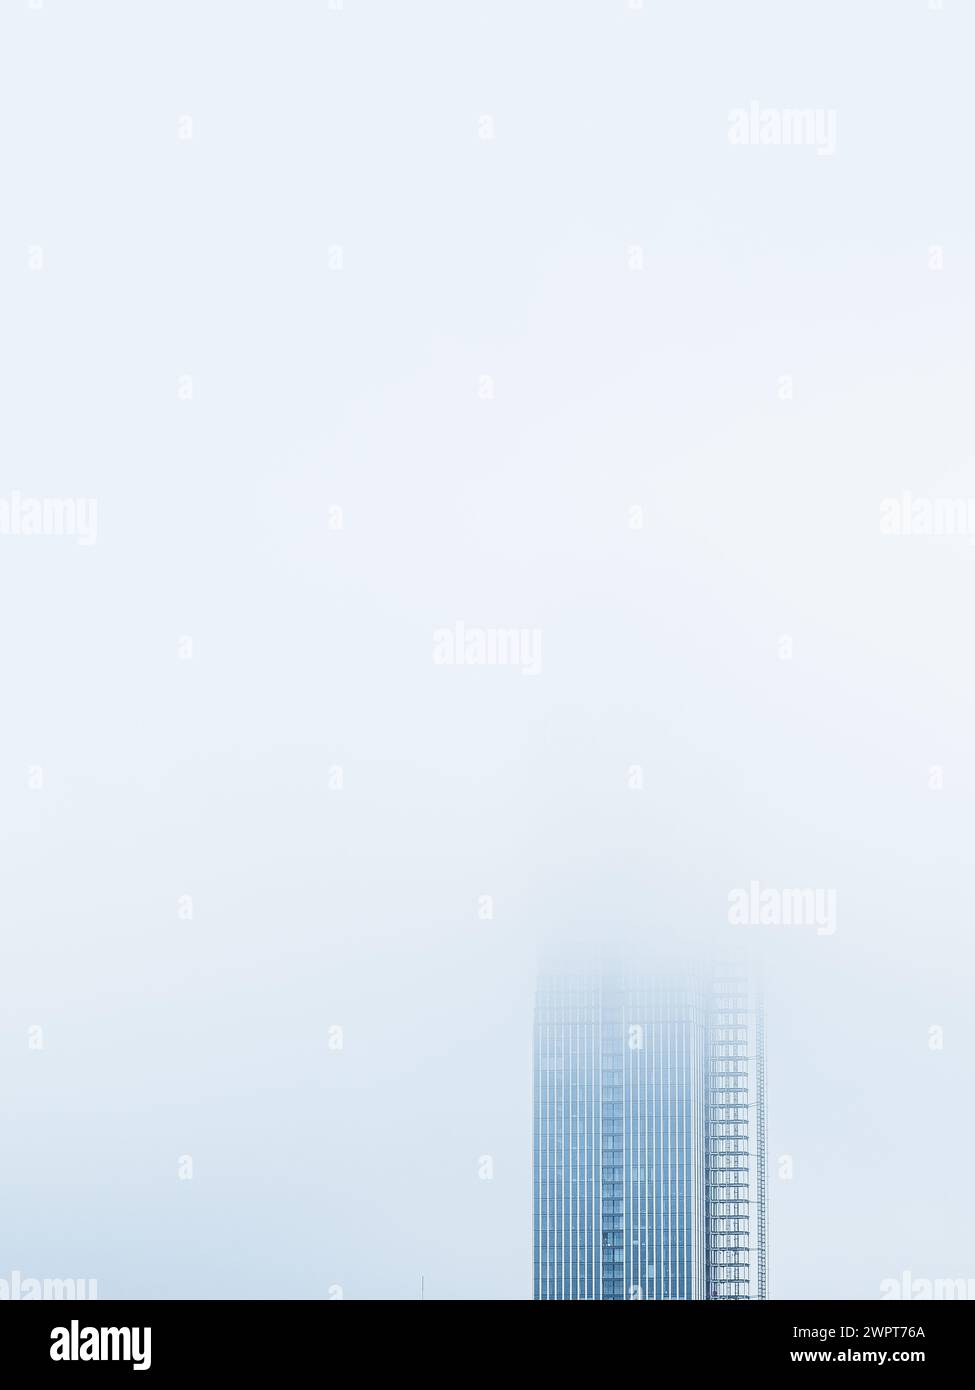 Die Spitze eines hohen Wolkenkratzers erhebt sich aus einem dicken, nebeligen Schleier vor einem ruhigen Himmel in Göteborg, Schweden. Der Morgennebel verdeckt teilweise den Mo Stockfoto